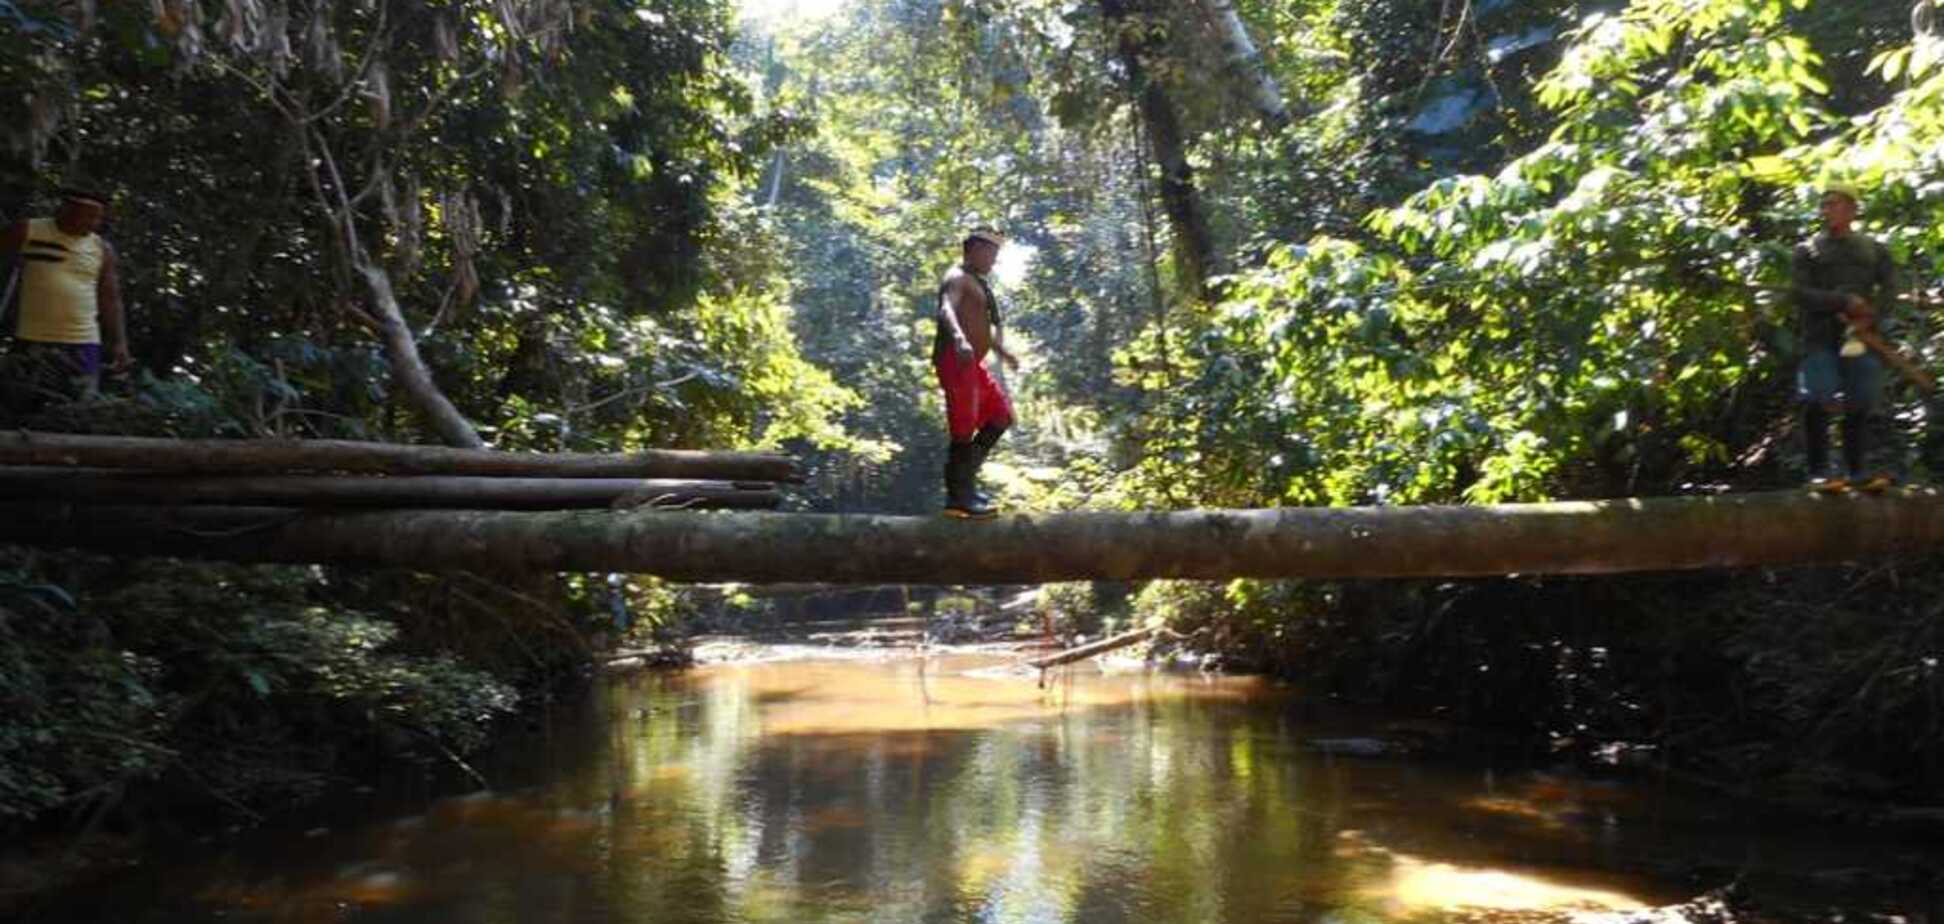 Цивилизация не затронула: в Бразилии нашли затерянное племя дикарей